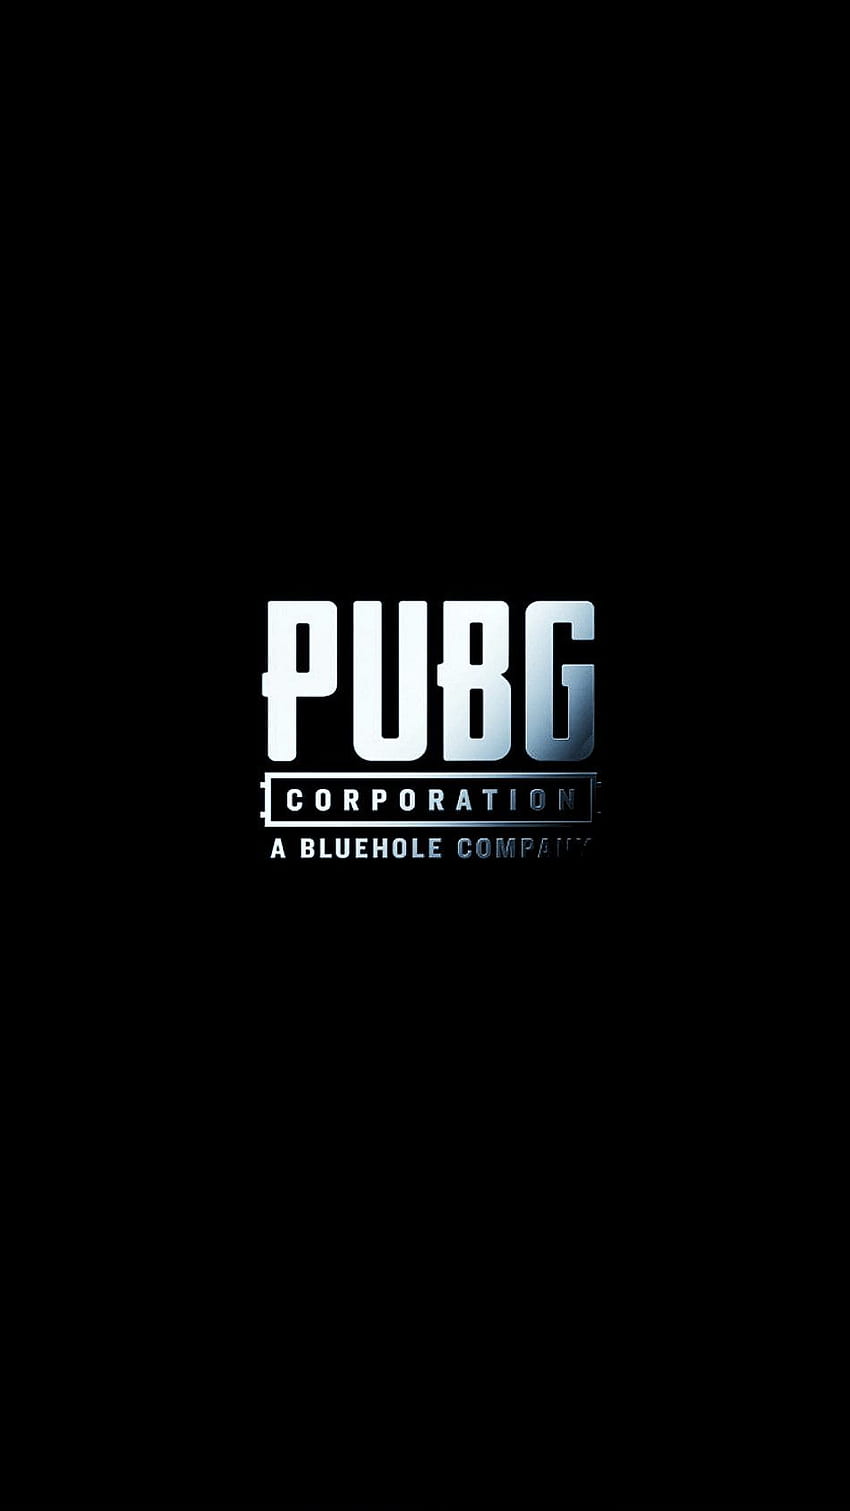 Pubg logo HD wallpapers | Pxfuel